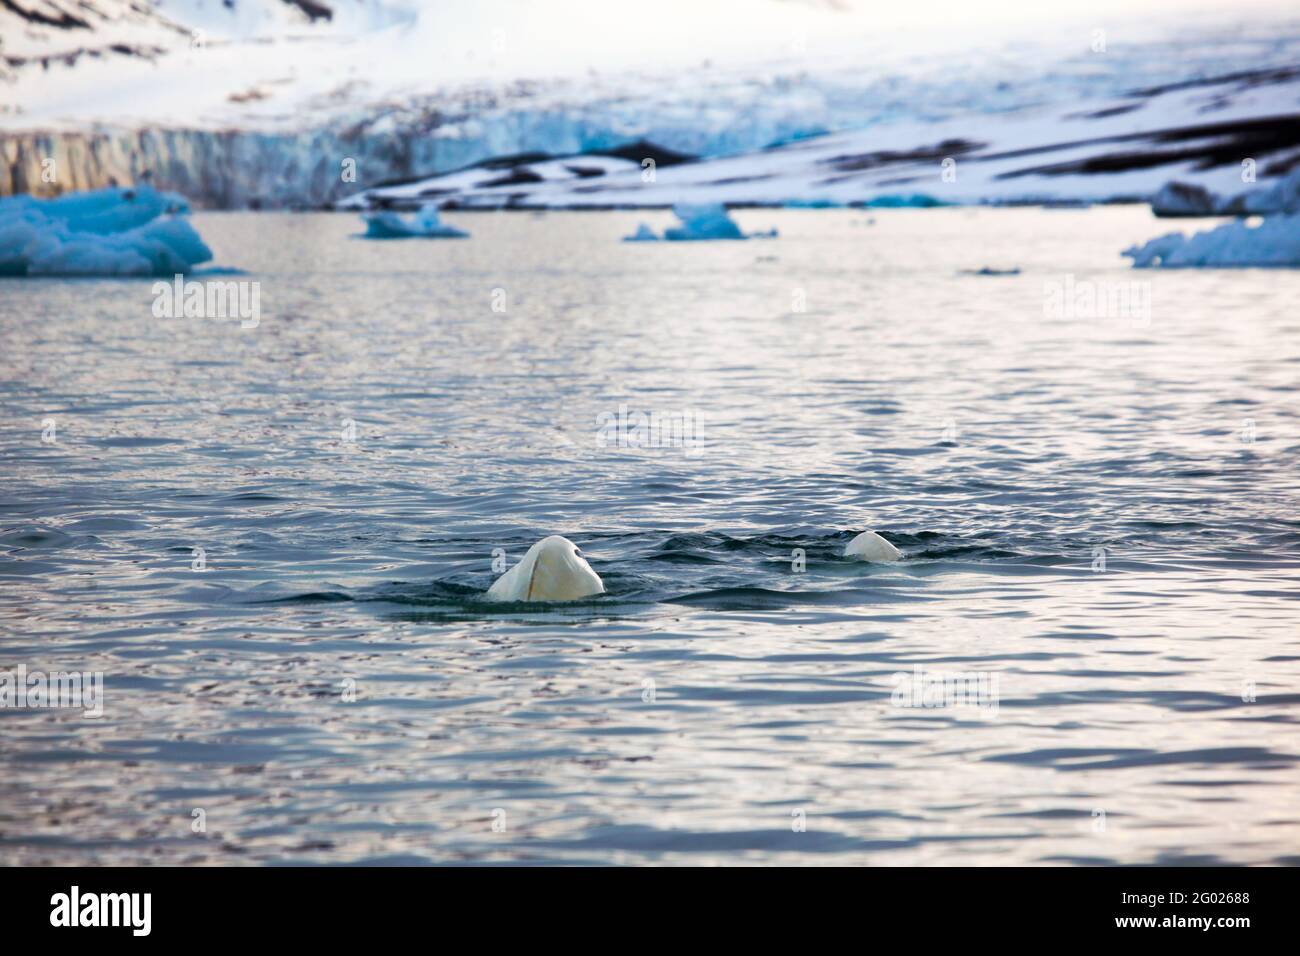 Béluga ou baleine blanche, Delphinapterus leucas, à Leifdefjorden, dans le nord du Svalbard. Leifdefjorden se trouve dans le parc national du Nord-Ouest du Spitsbergen (Nordv Banque D'Images